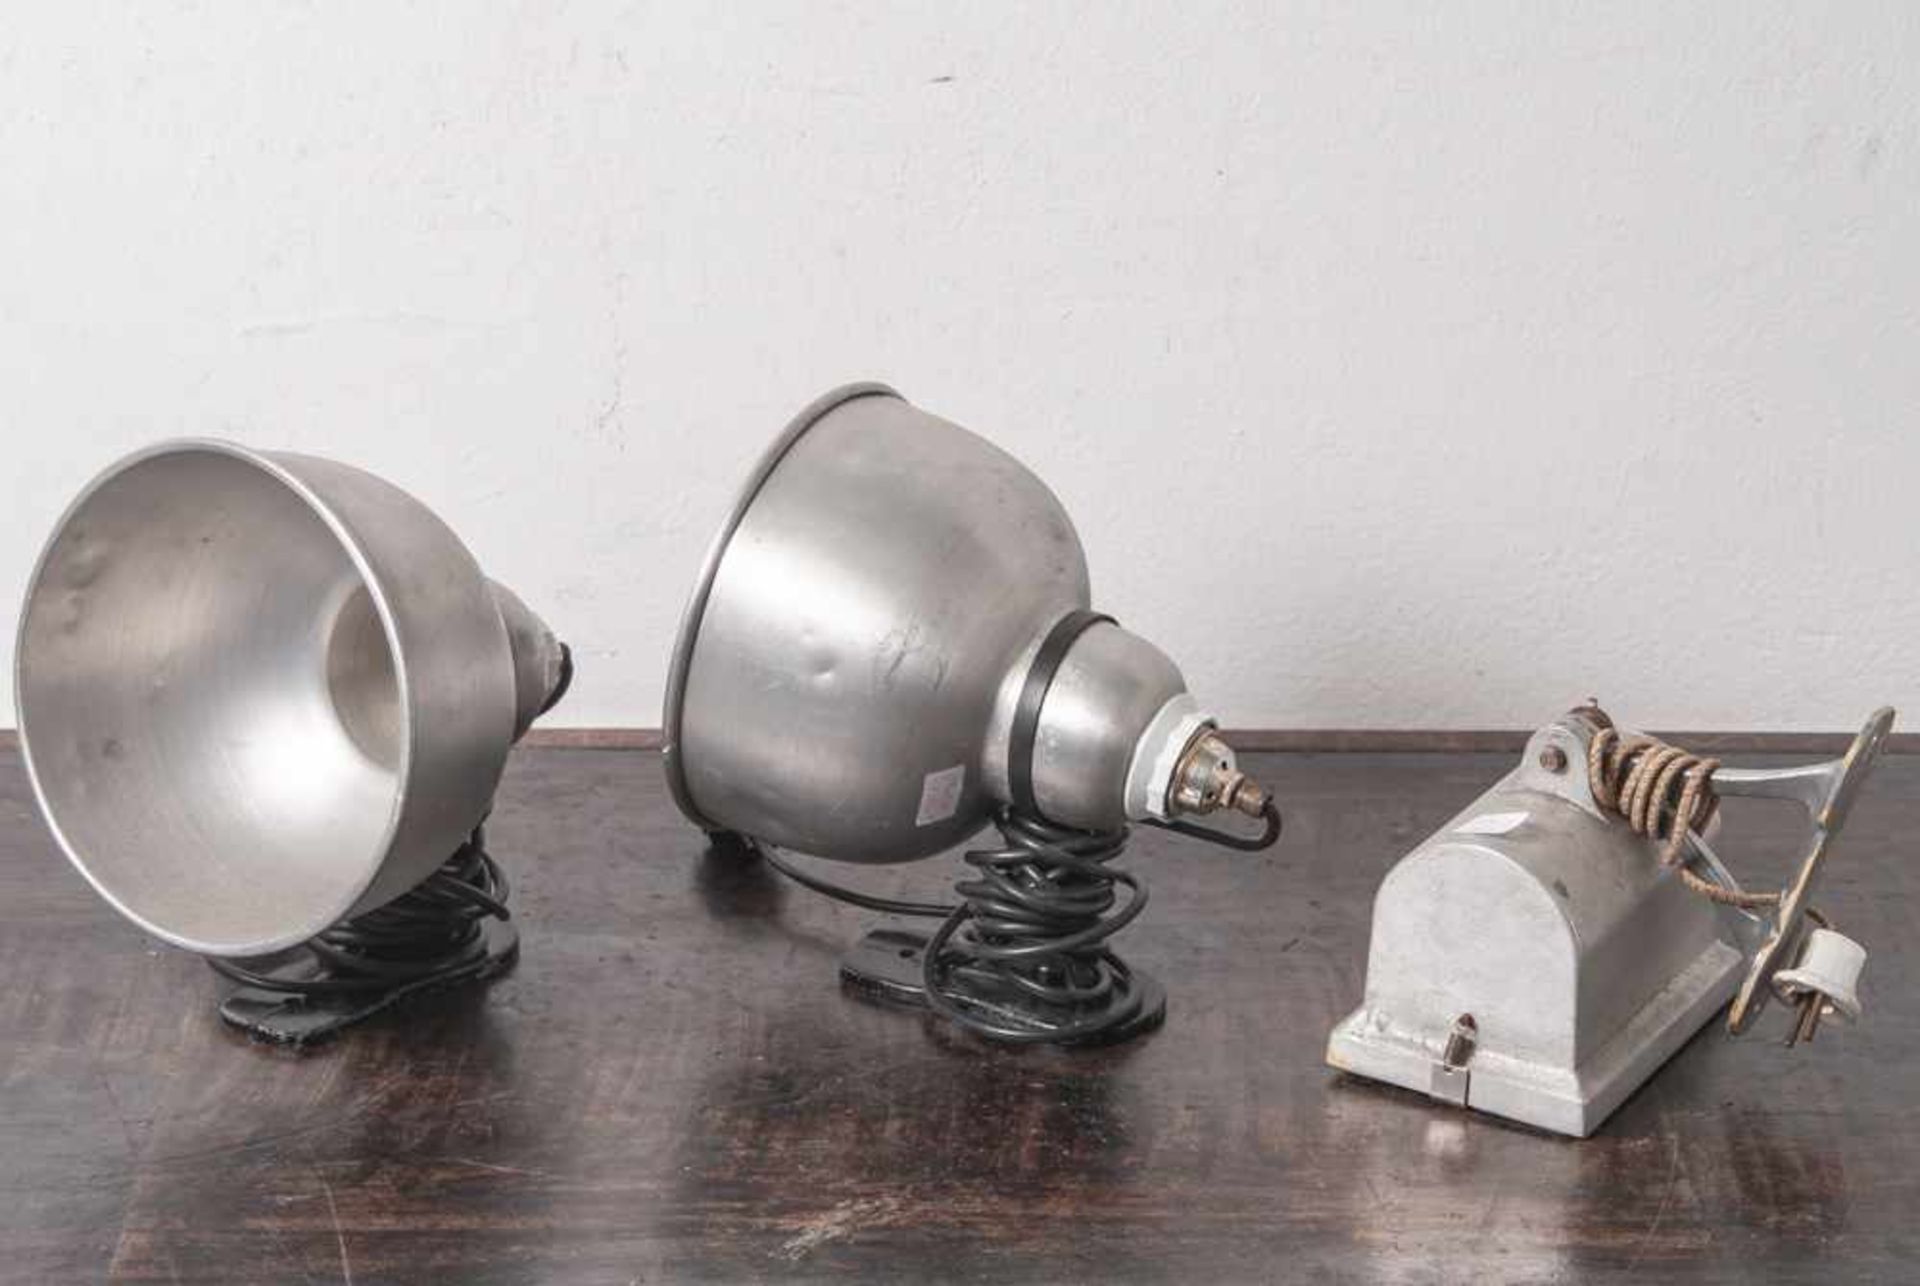 Konvolut von 3 Wandlampen, wohl 1940er/50er Jahre, aus altem Fotogeschäft, bestehend aus:2